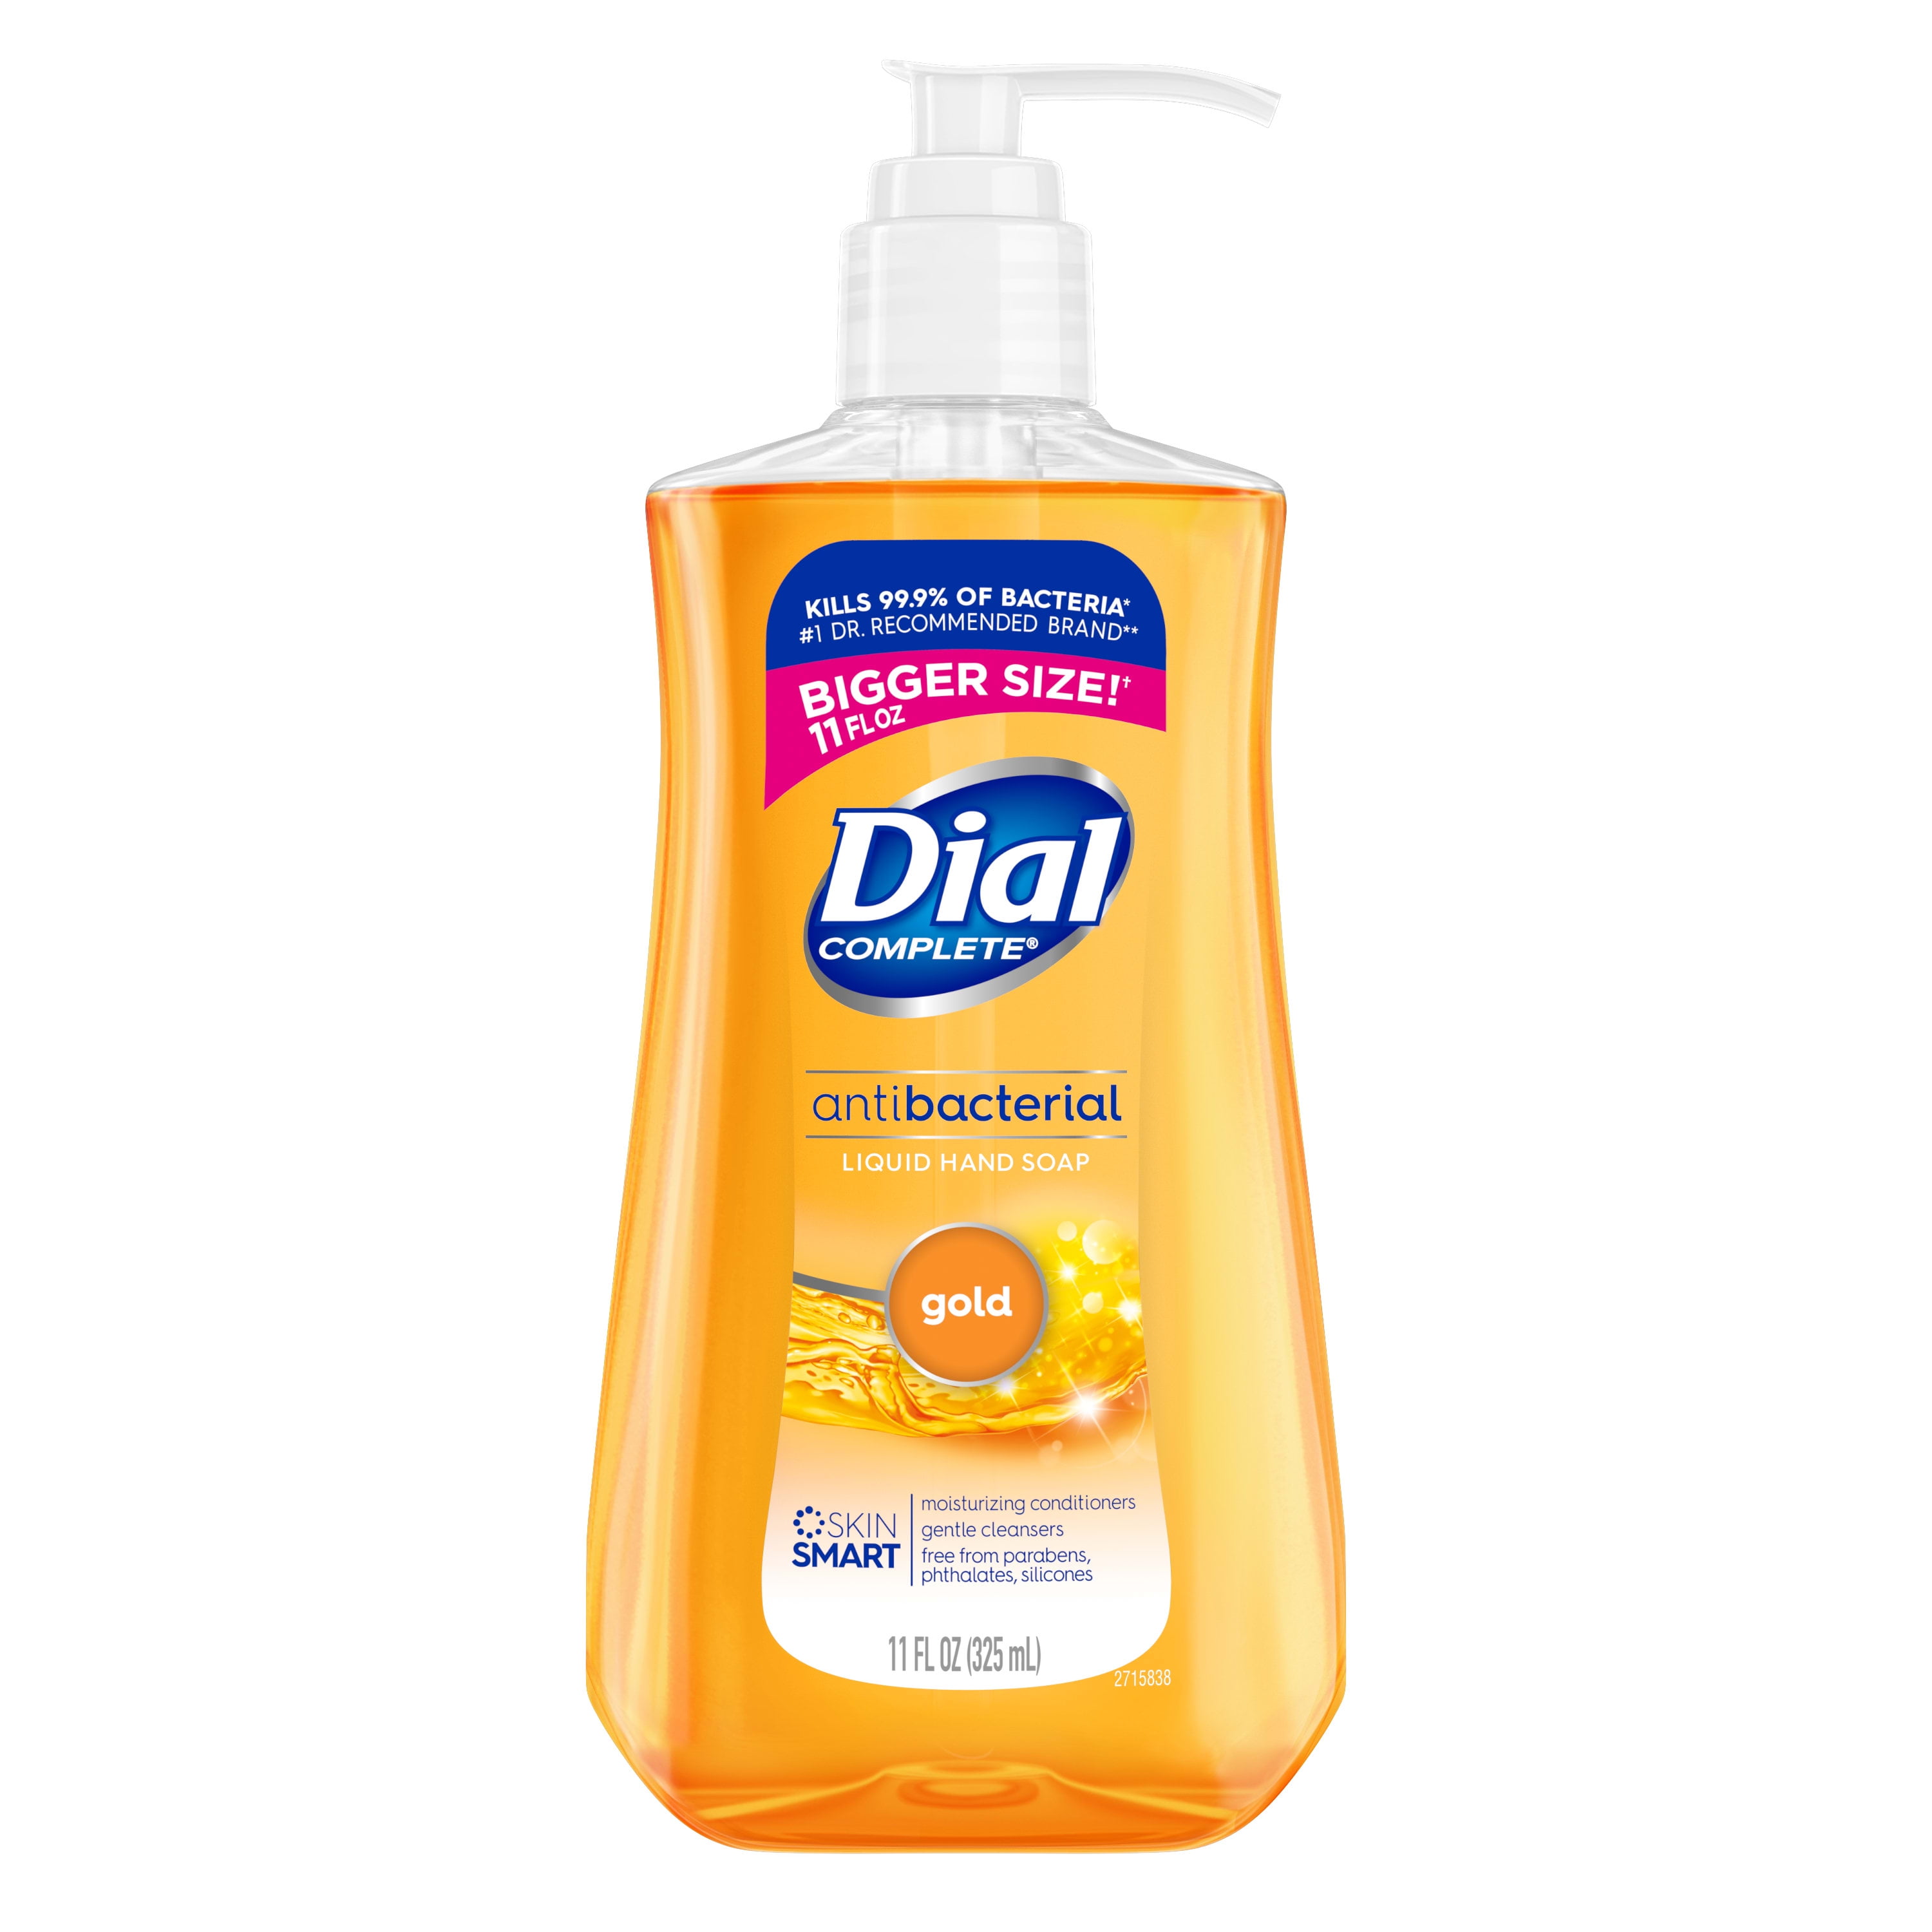 Dial Complete Antibacterial Liquid Hand Soap, Gold, 11 fl oz